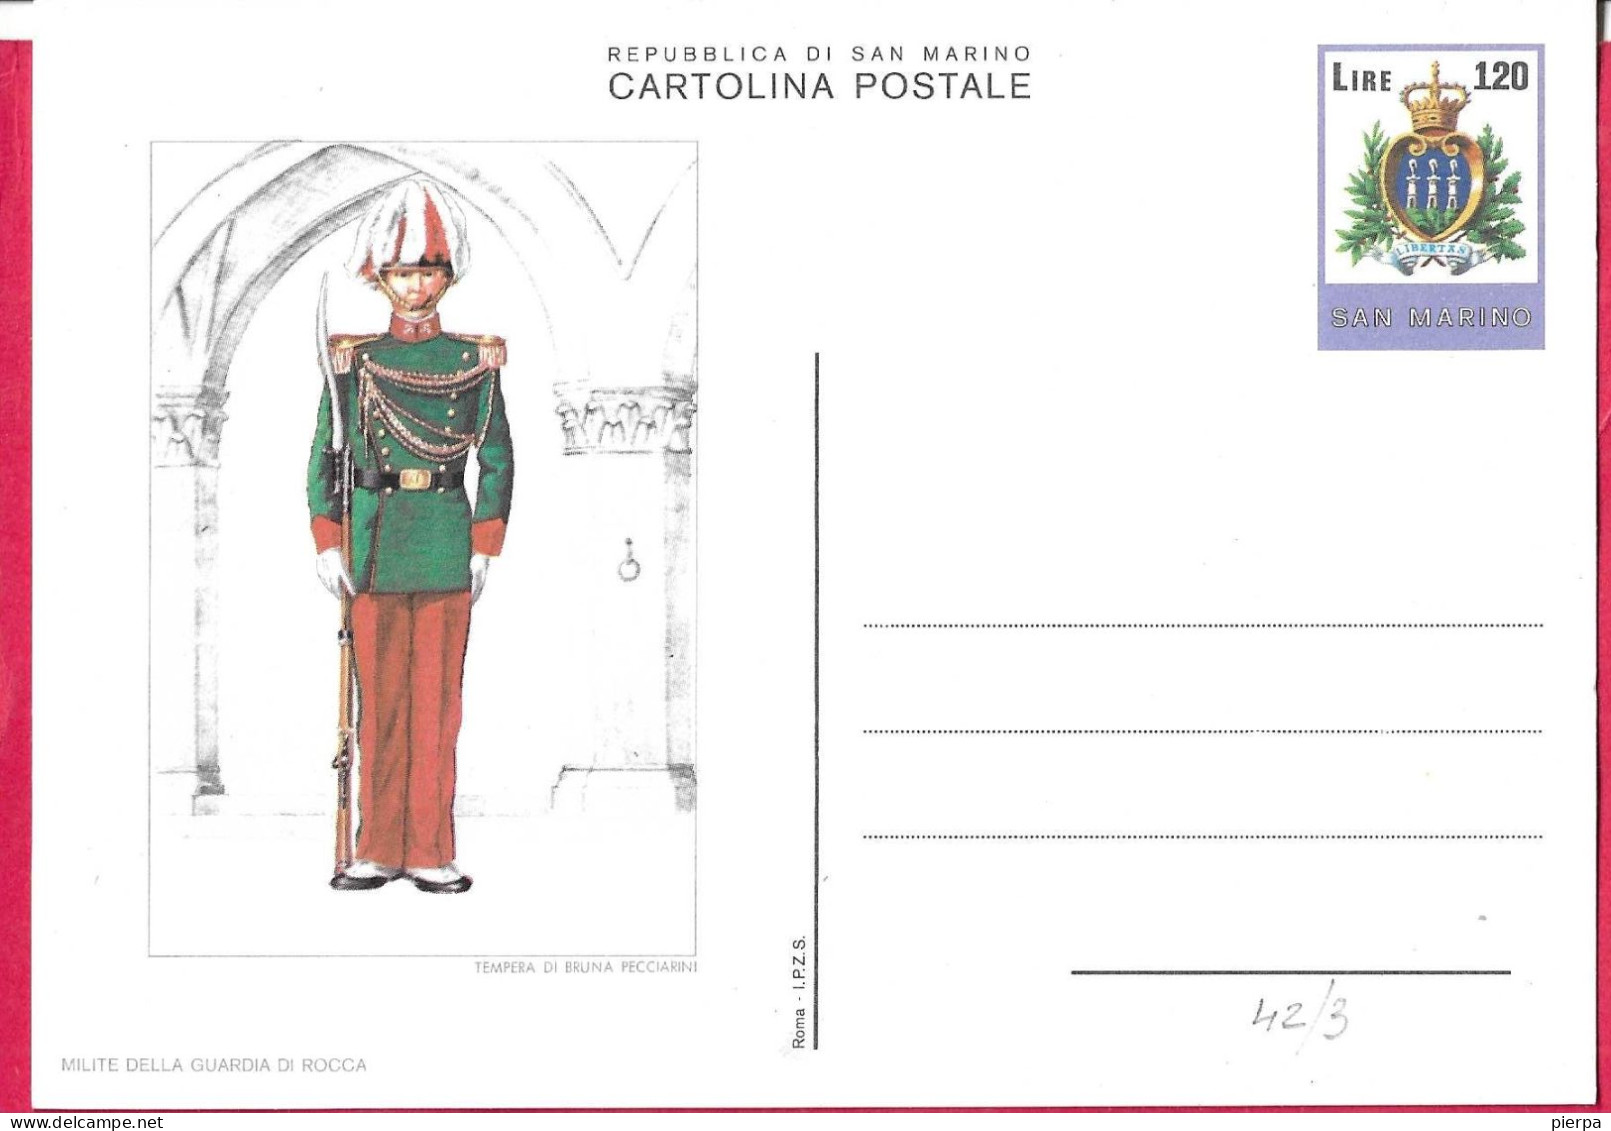 SAN MARINO - INTERO CARTOLINA POSTALE UNIFORMI (MILITE DELLA GUARDIA DI ROCCA) LIRE 120 (CAT. INT 42/3) - NUOVO - Postwaardestukken